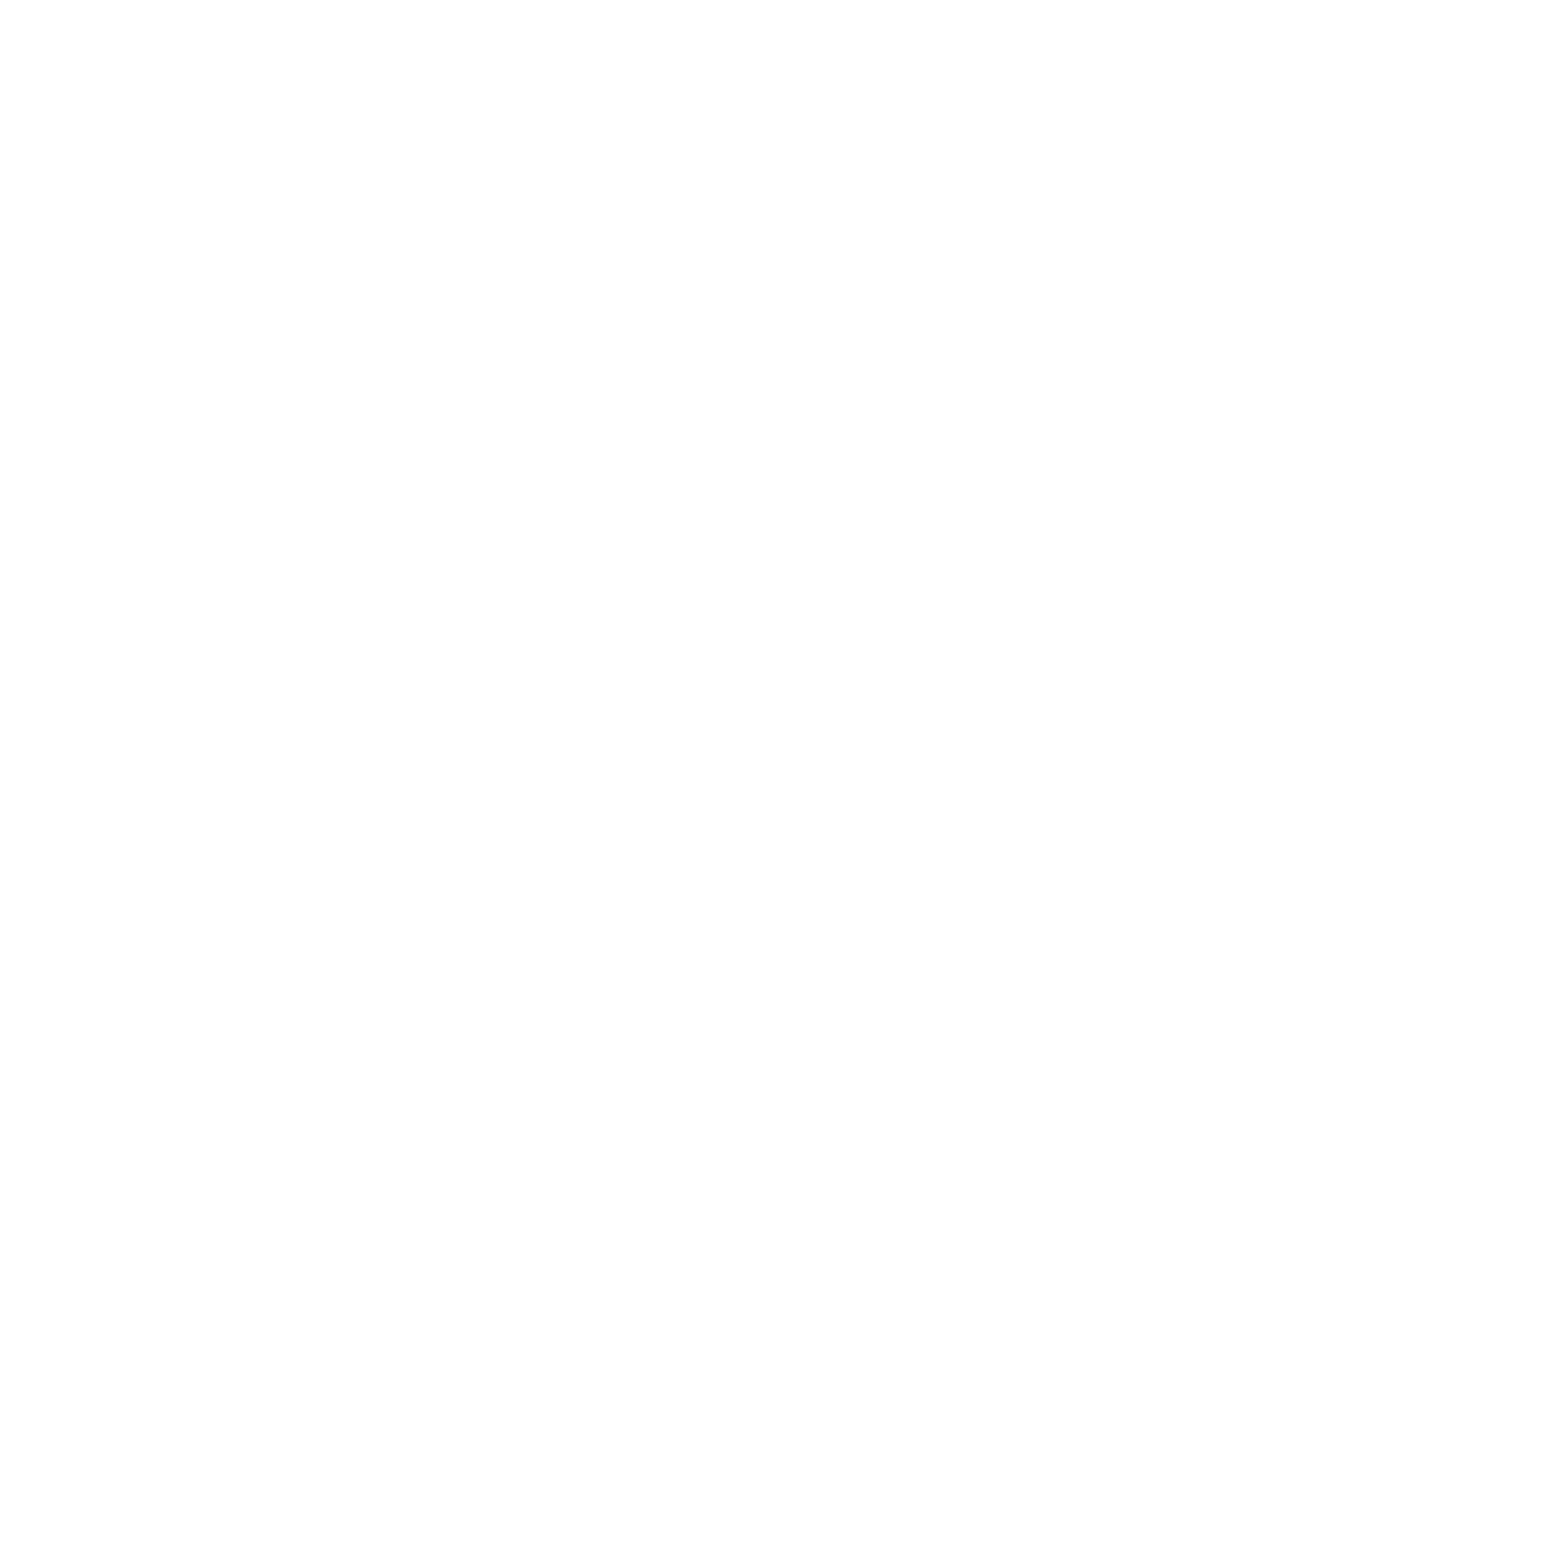 lensax-logo-zeiss.png